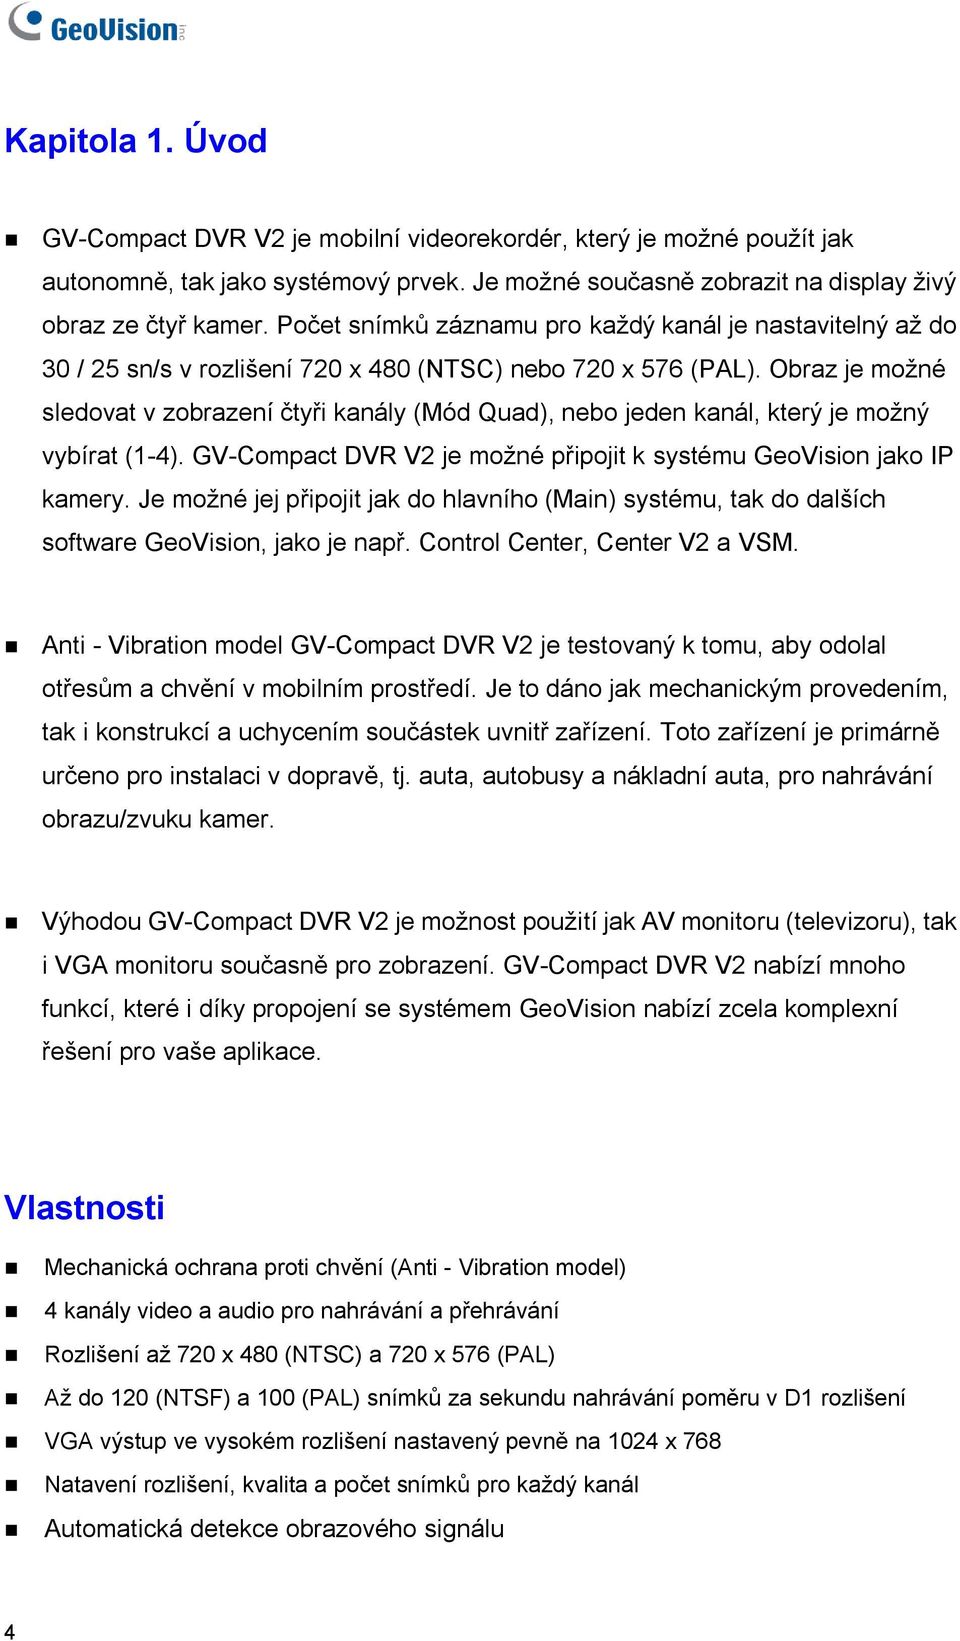 Obraz je možné sledovat v zobrazení čtyři kanály (Mód Quad), nebo jeden kanál, který je možný vybírat (1-4). GV-Compact DVR V2 je možné připojit k systému GeoVision jako IP kamery.